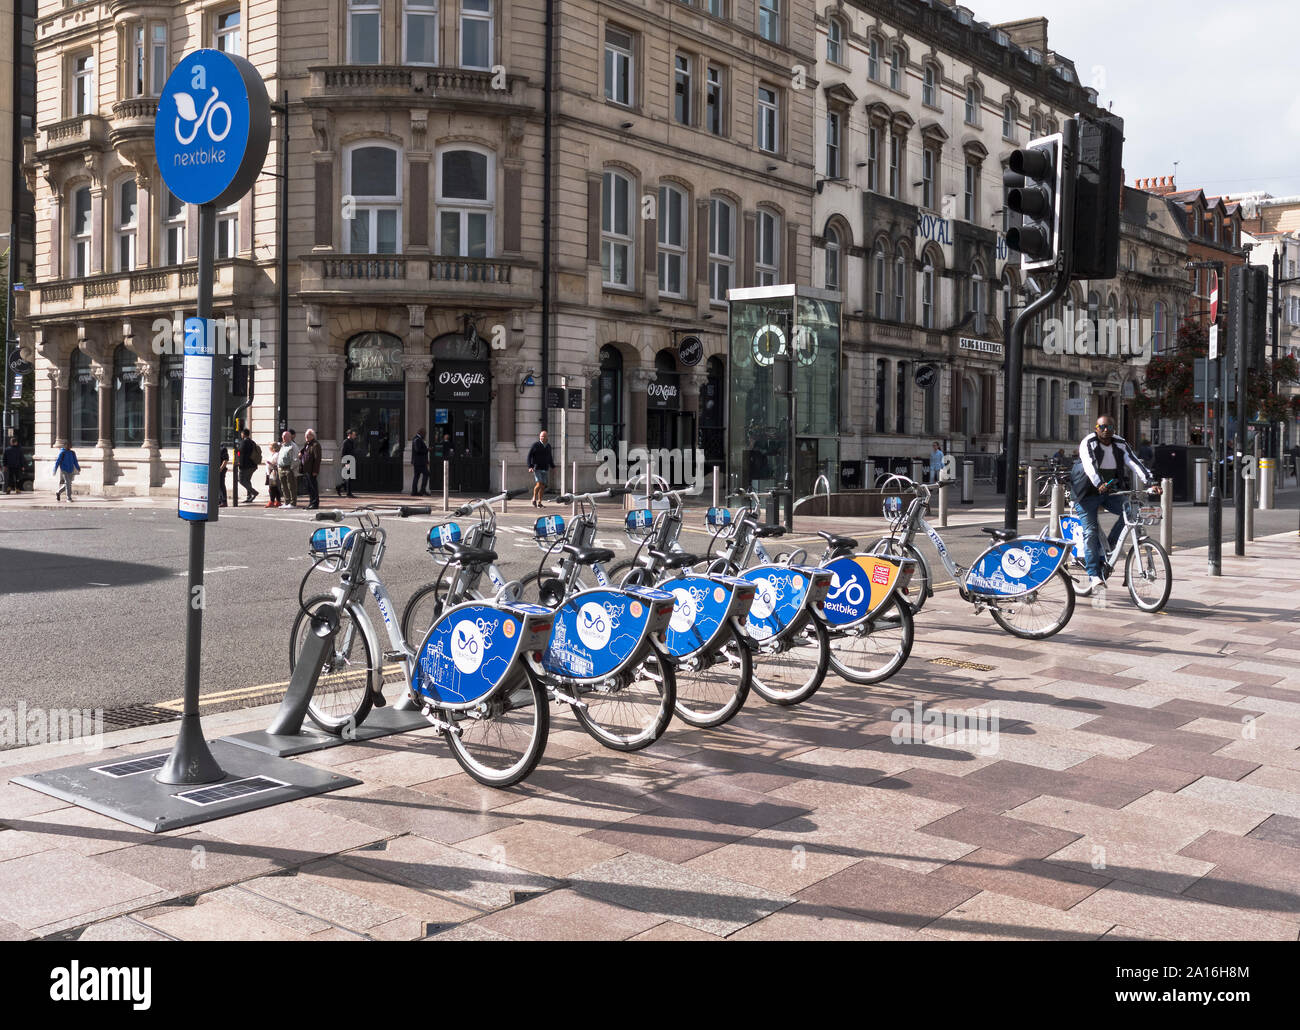 Location de vélos vélo dh homme transport à l'aide de pay as you go location de vélo pour le pays de Galles Cardiff régime britannique d'embauche Banque D'Images